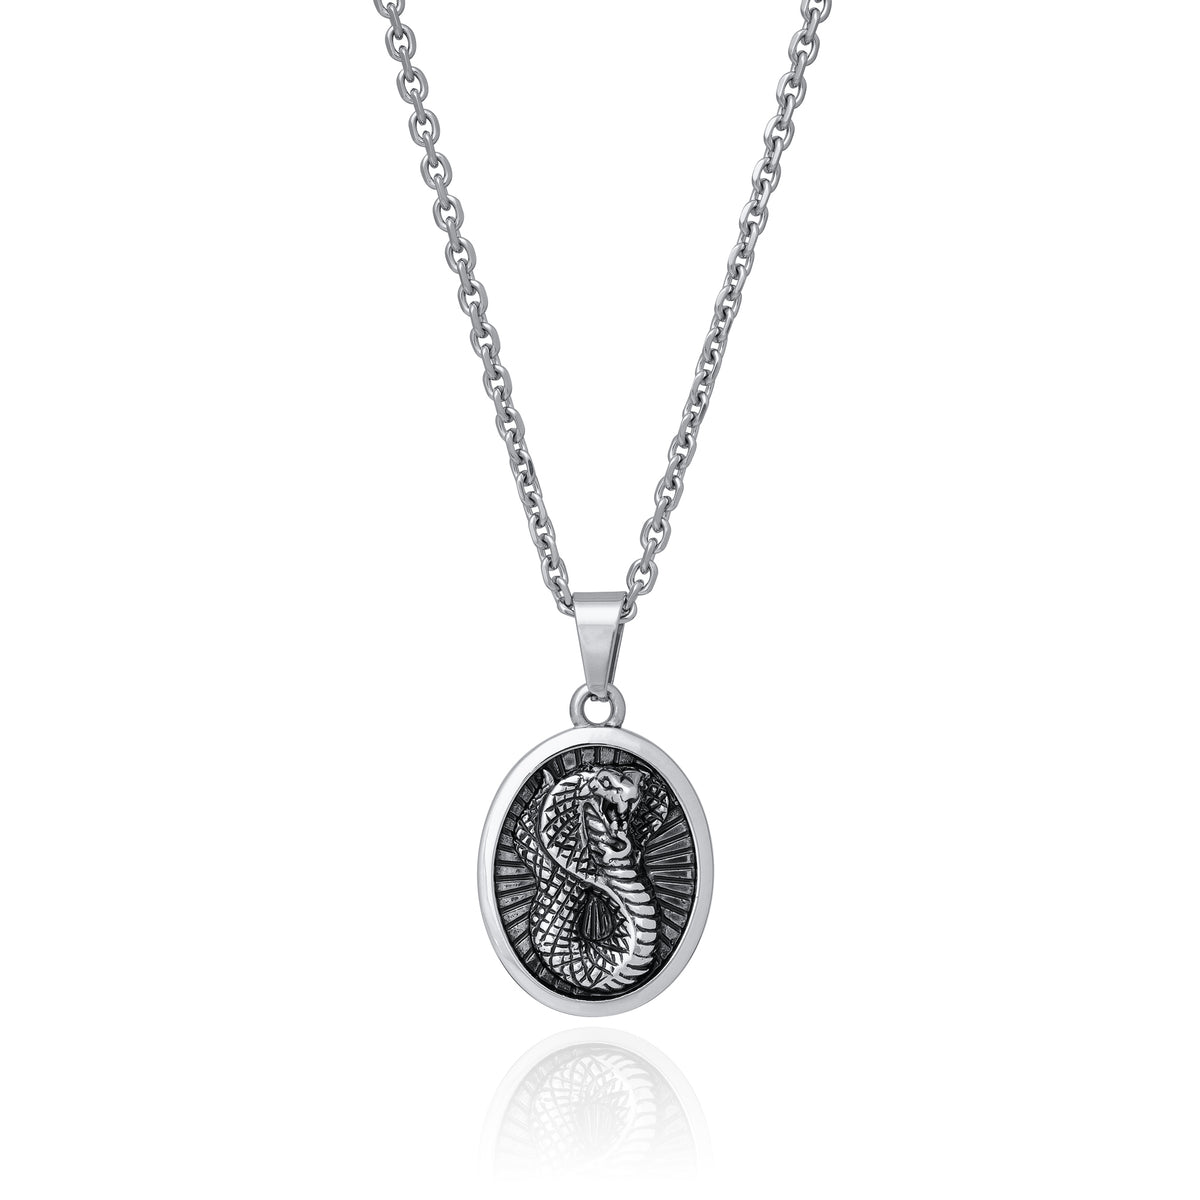 Silver snake oval talisman pendant on steel chain